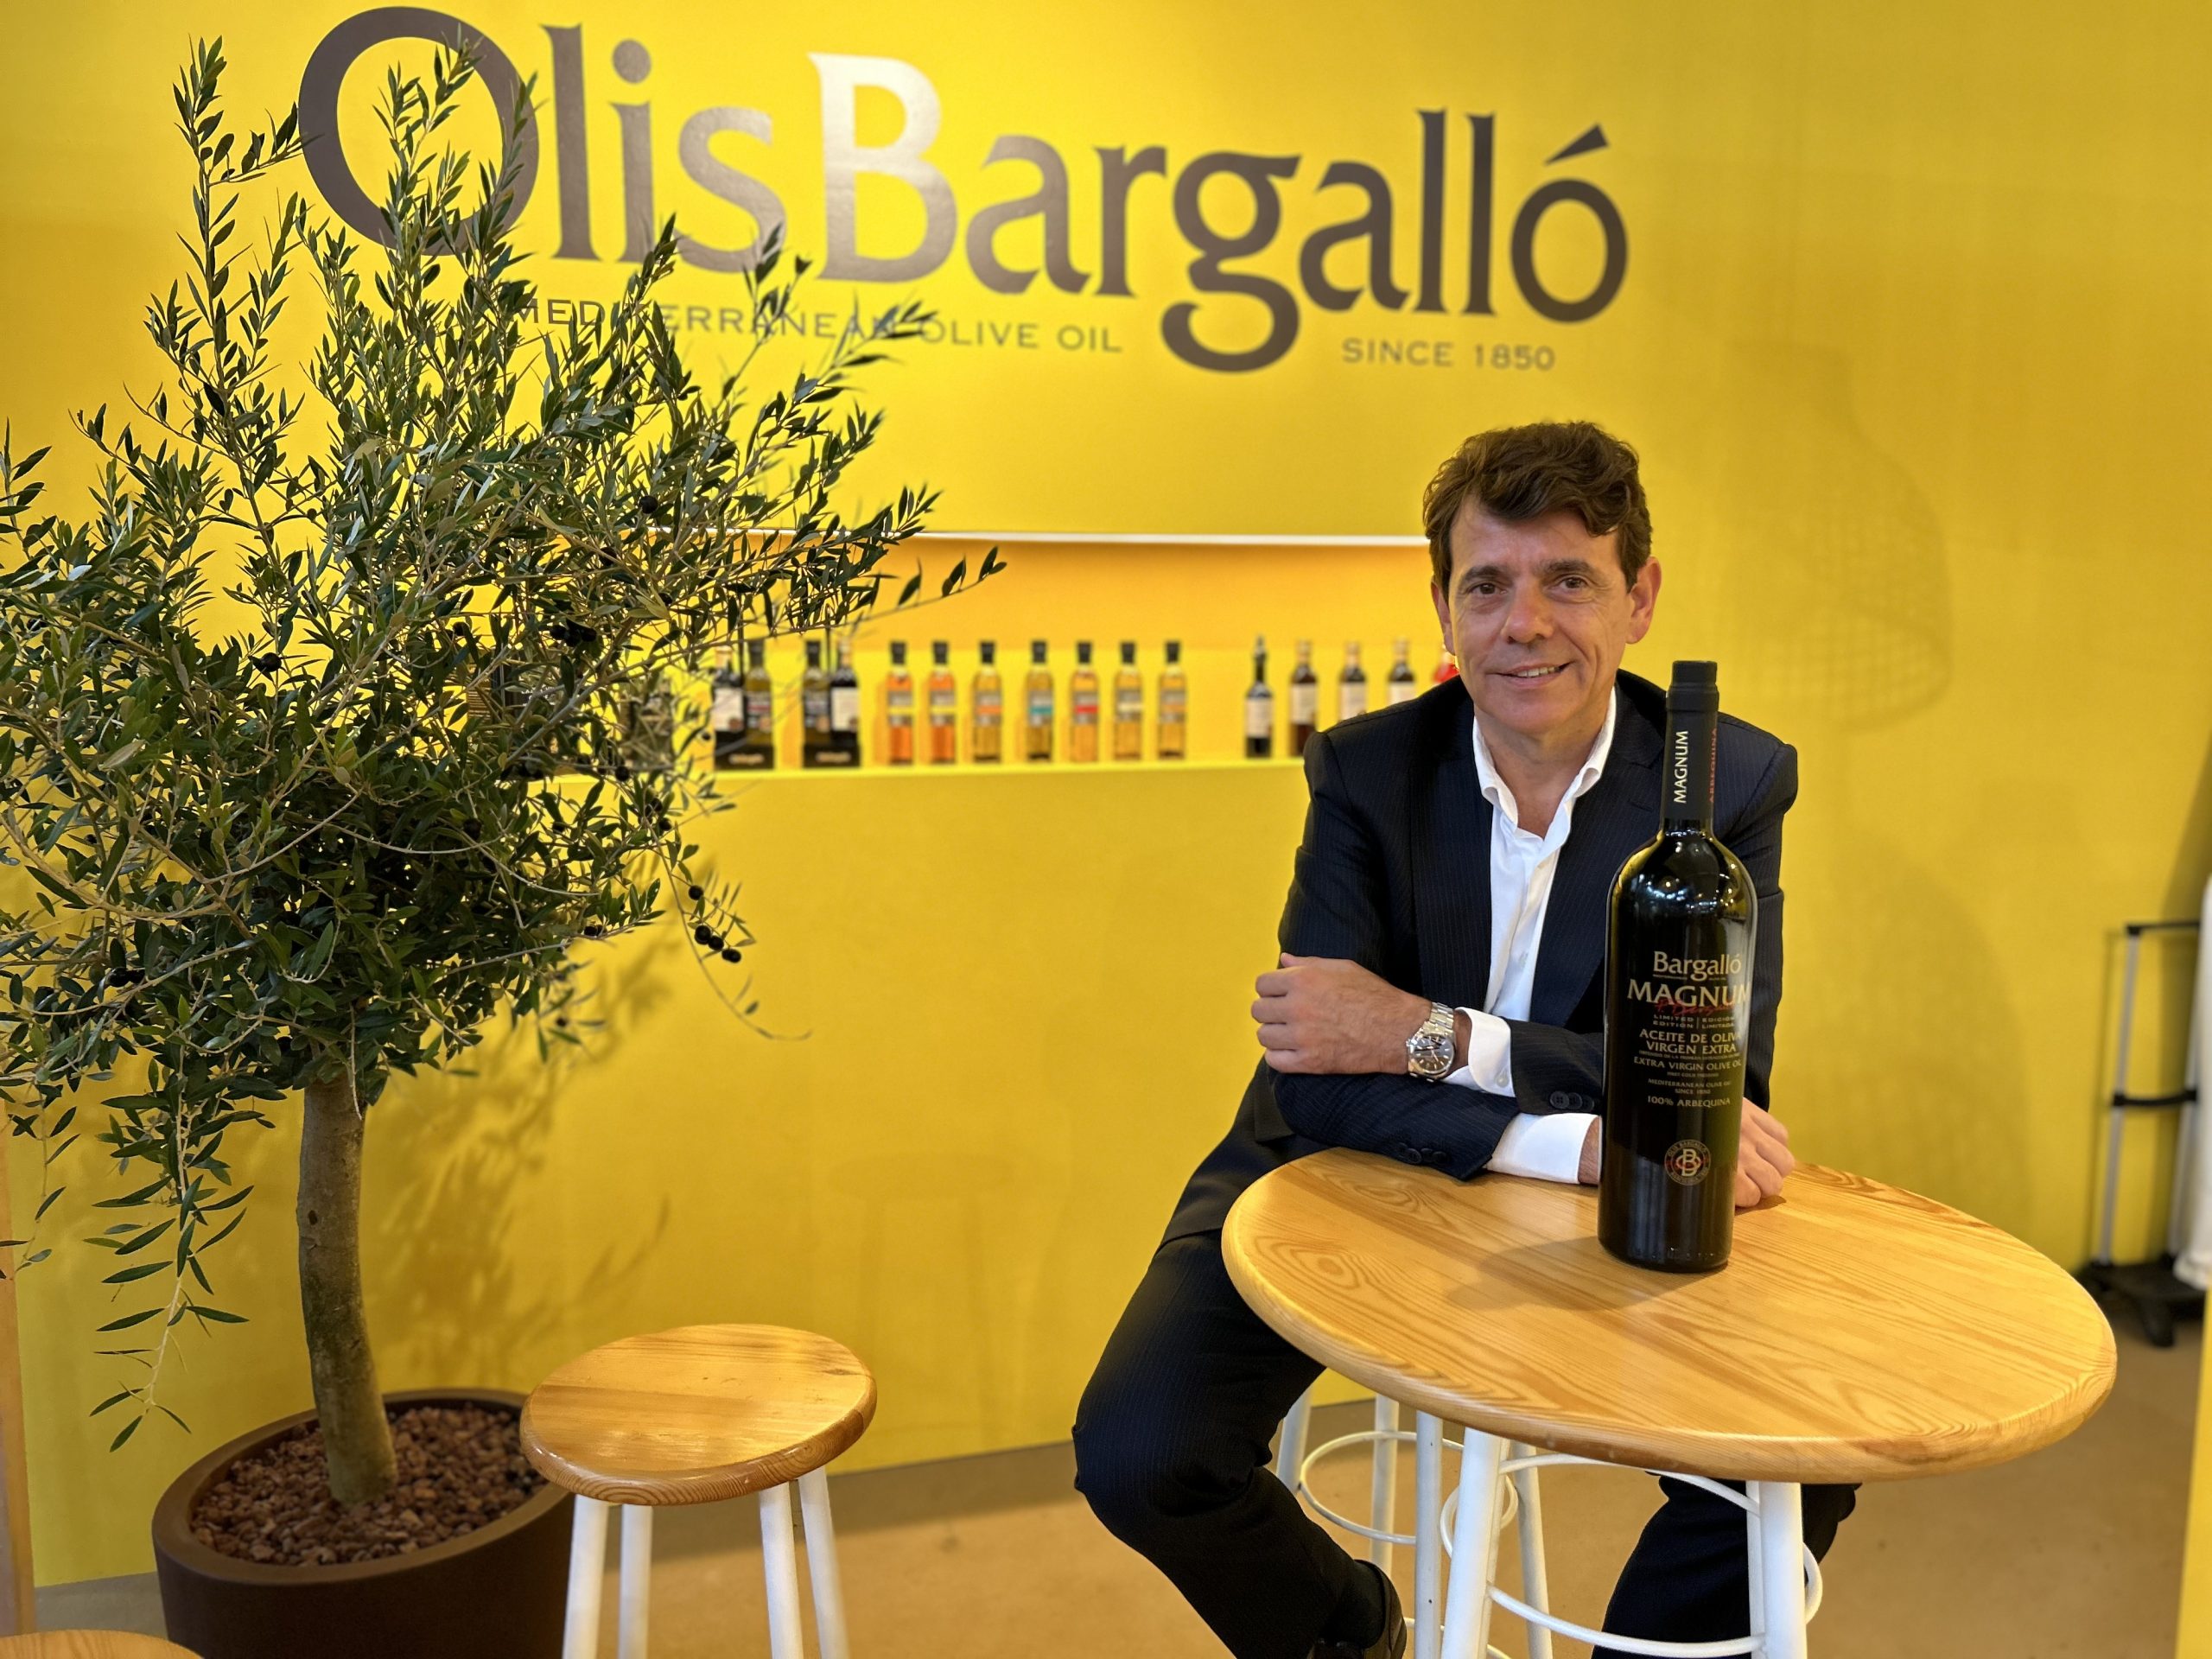 Francesc Bargalló, CEO de Olis Bargalló